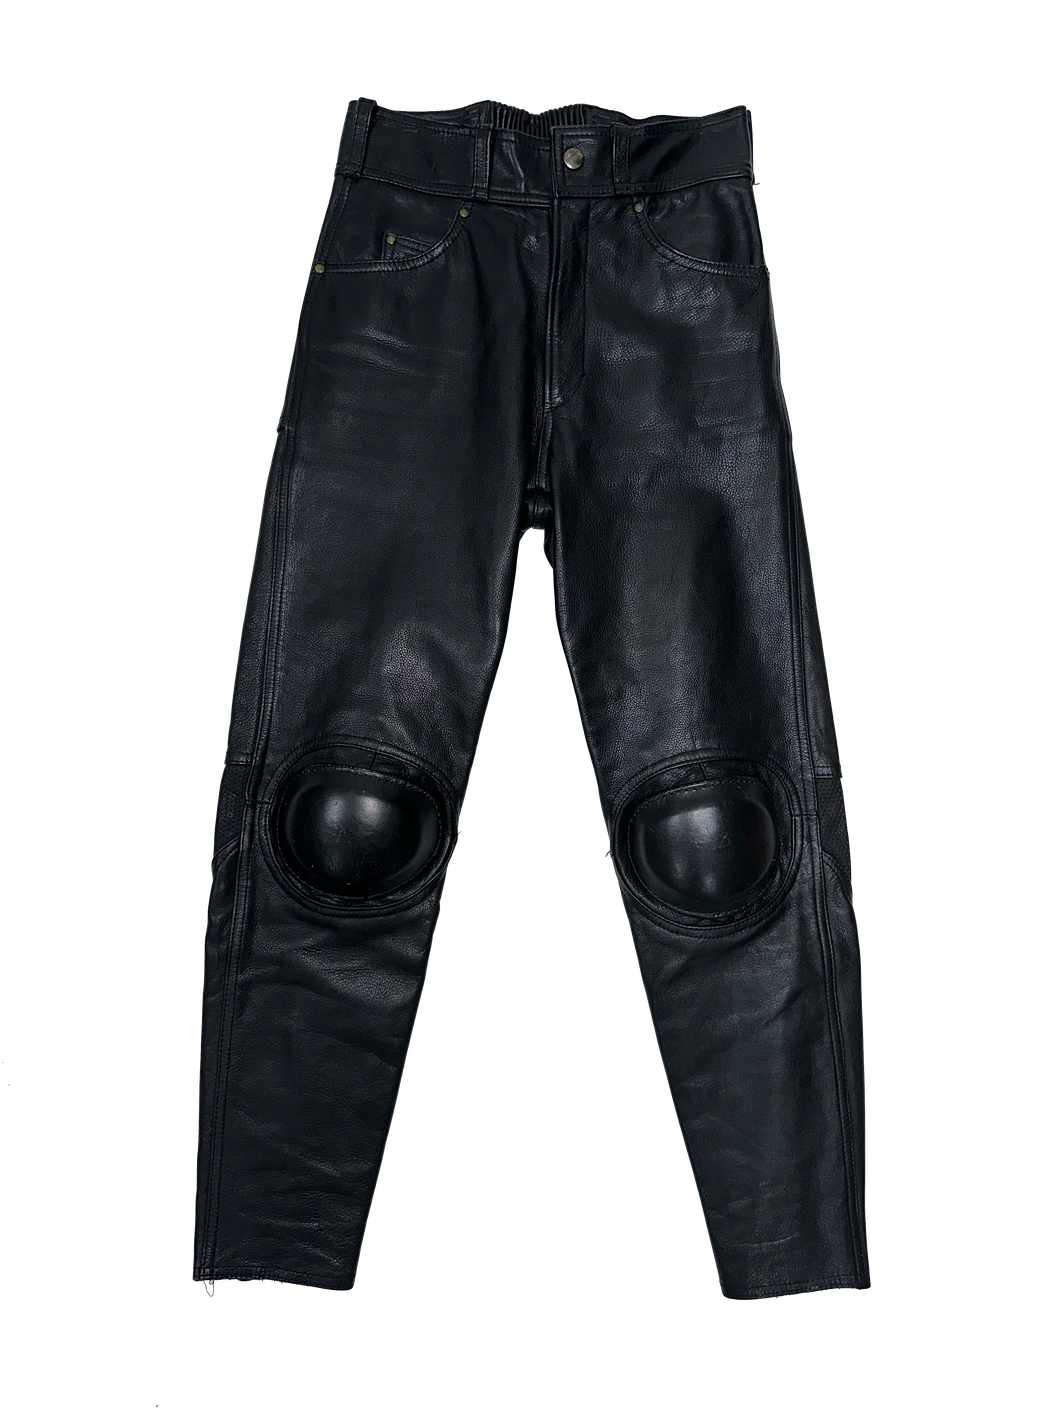 Kadoya Moto Leather Pants (29)